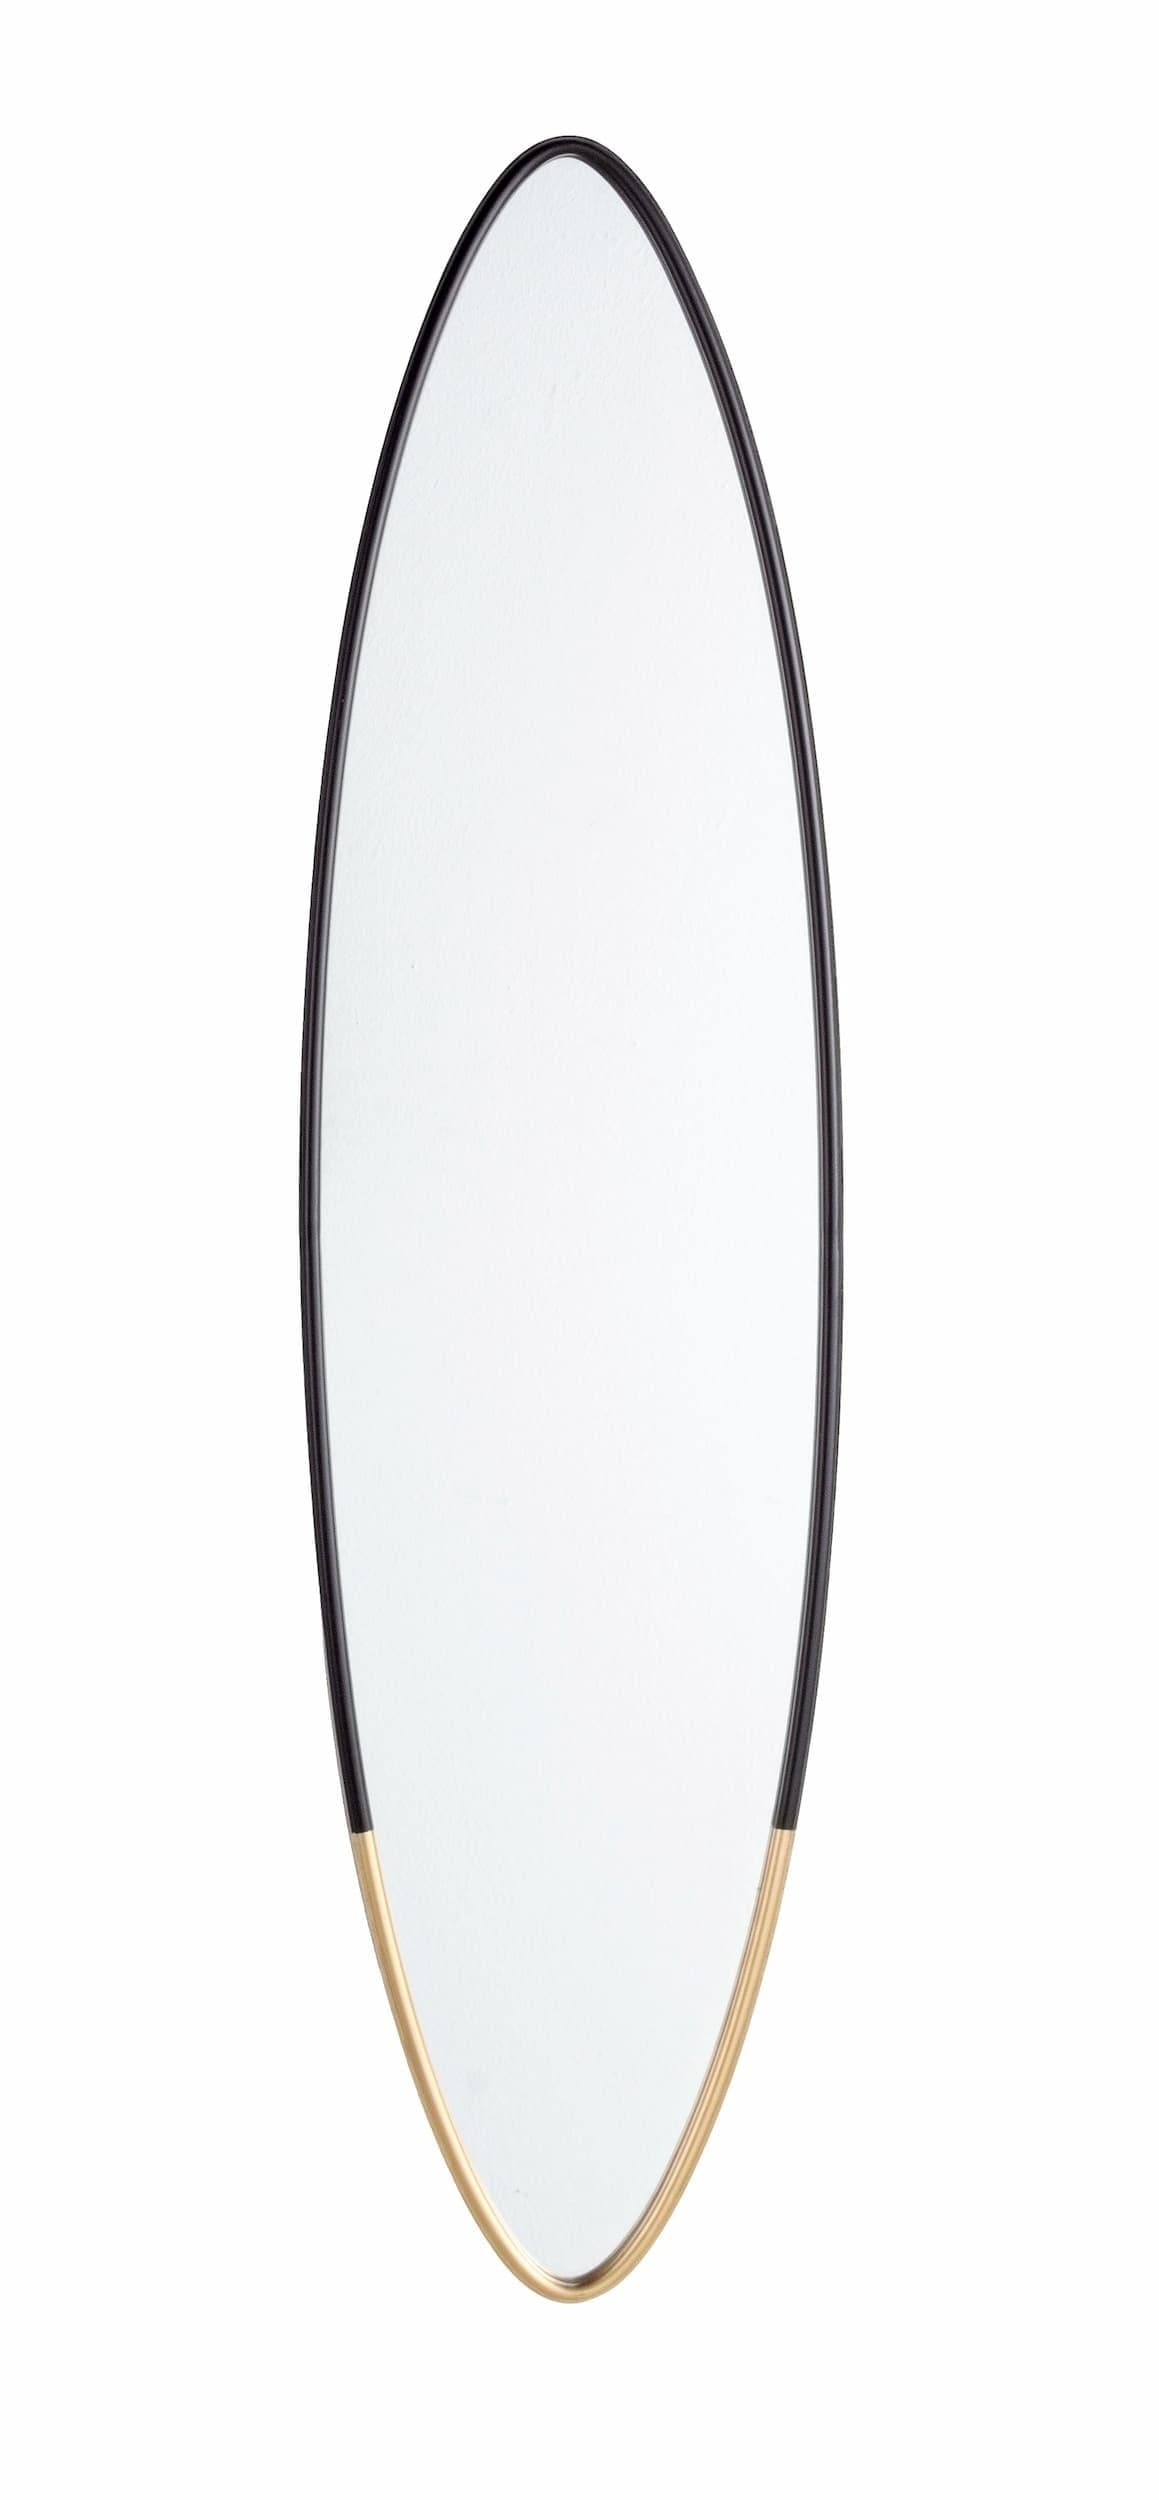 Oglinda decorativa cu rama metalica, Reflix Oval Negru / Auriu, l25xH100 cm